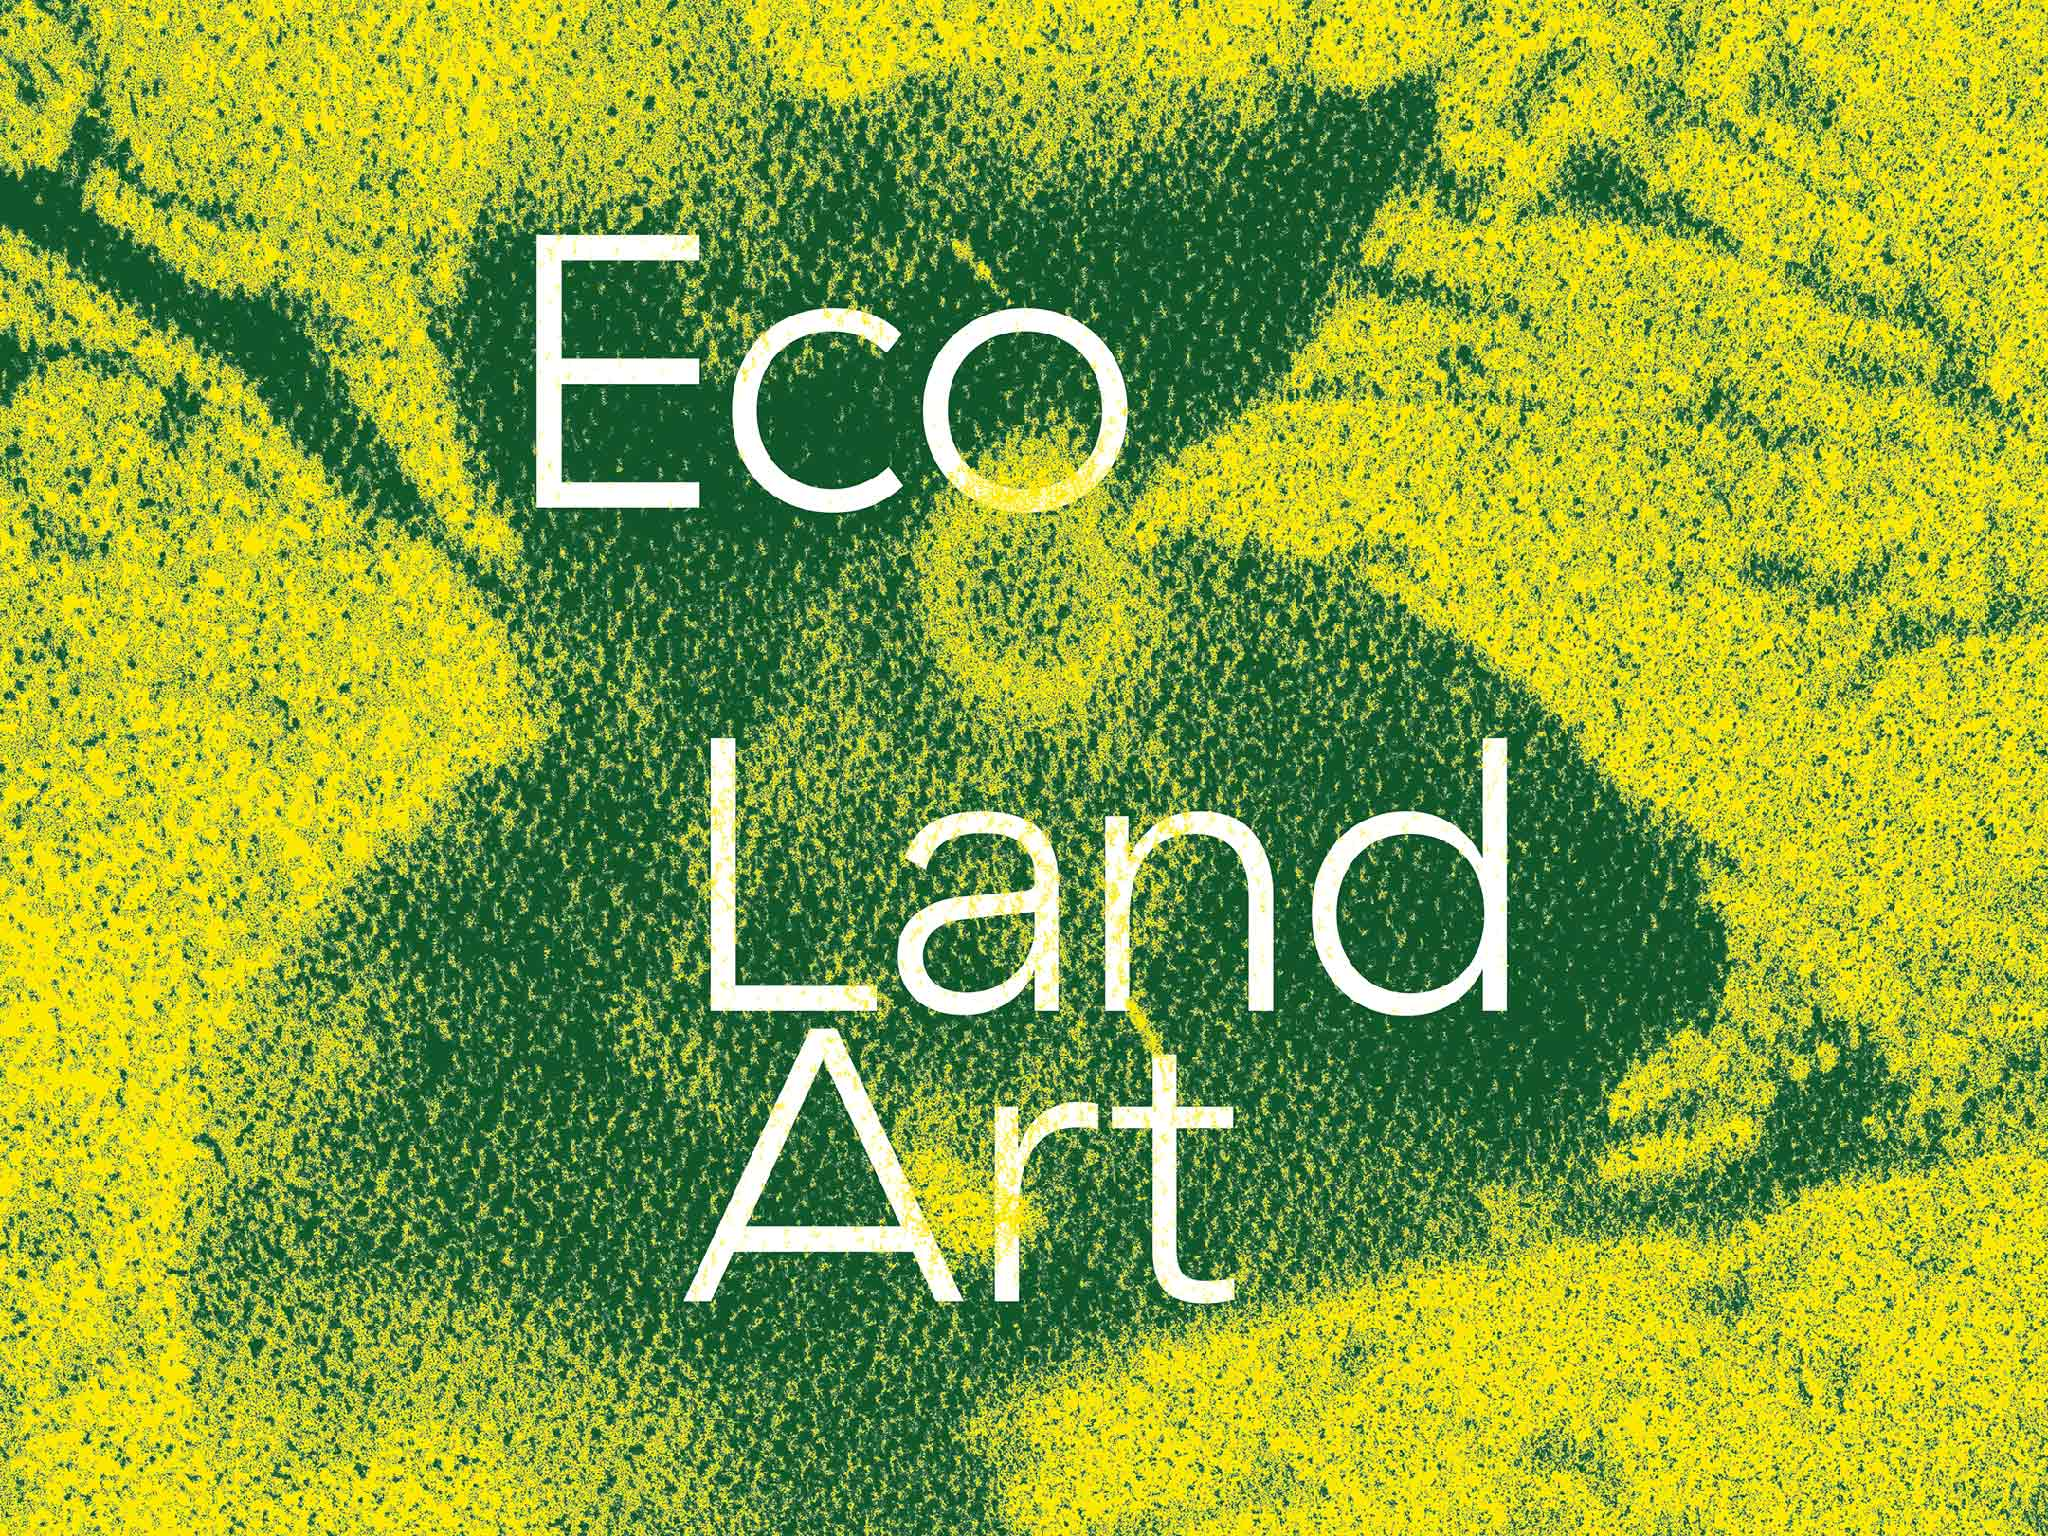 Eco Land Art.